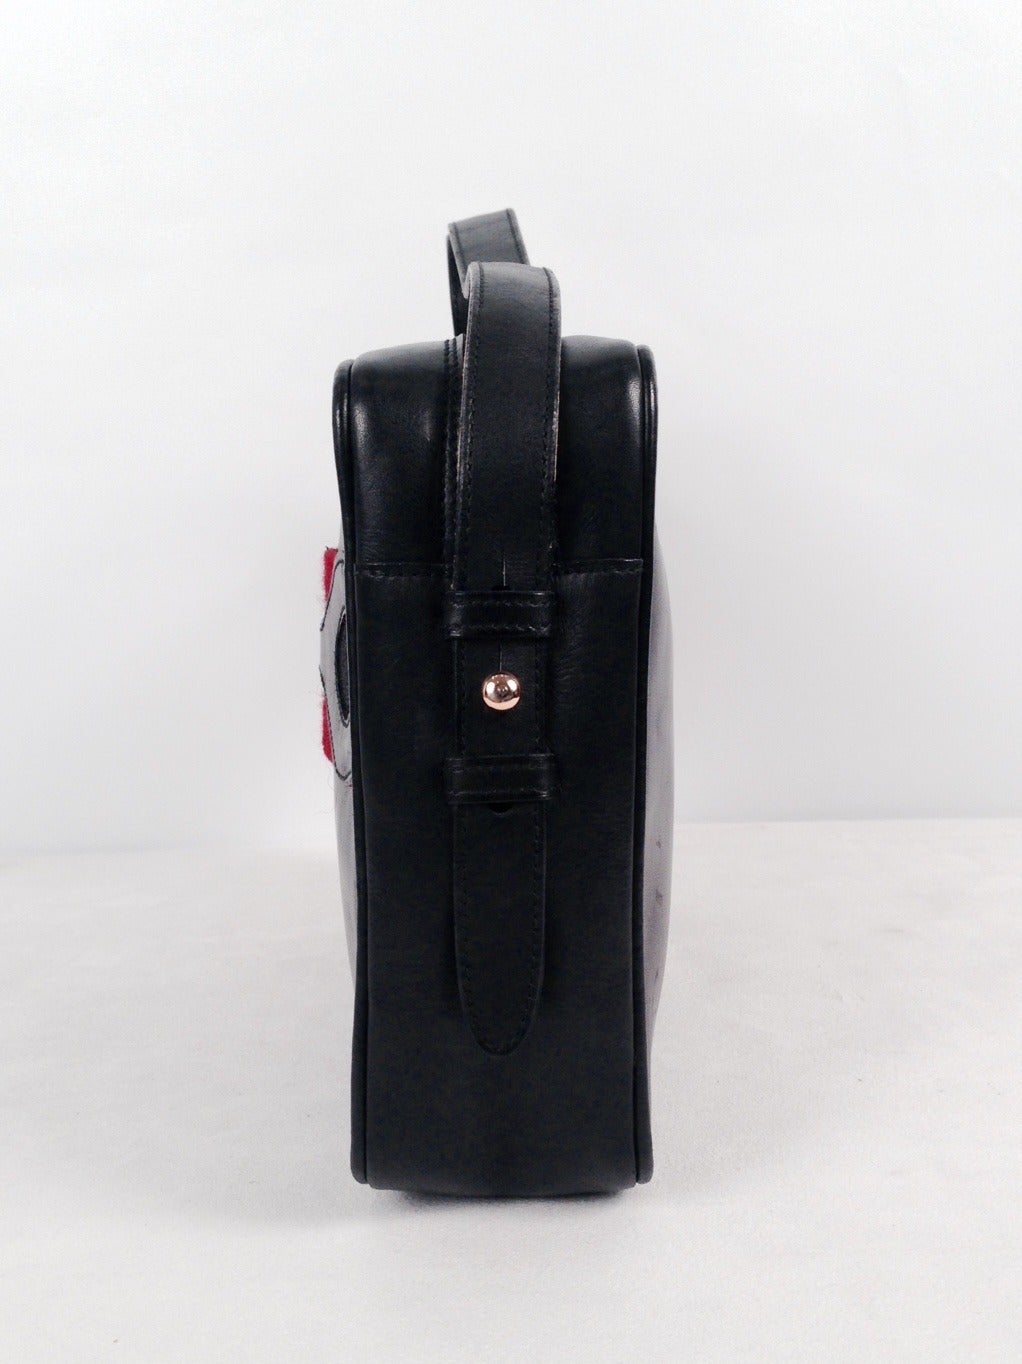 Vintage Gucci Black Leather Camera Bag For Sale at 1stdibs